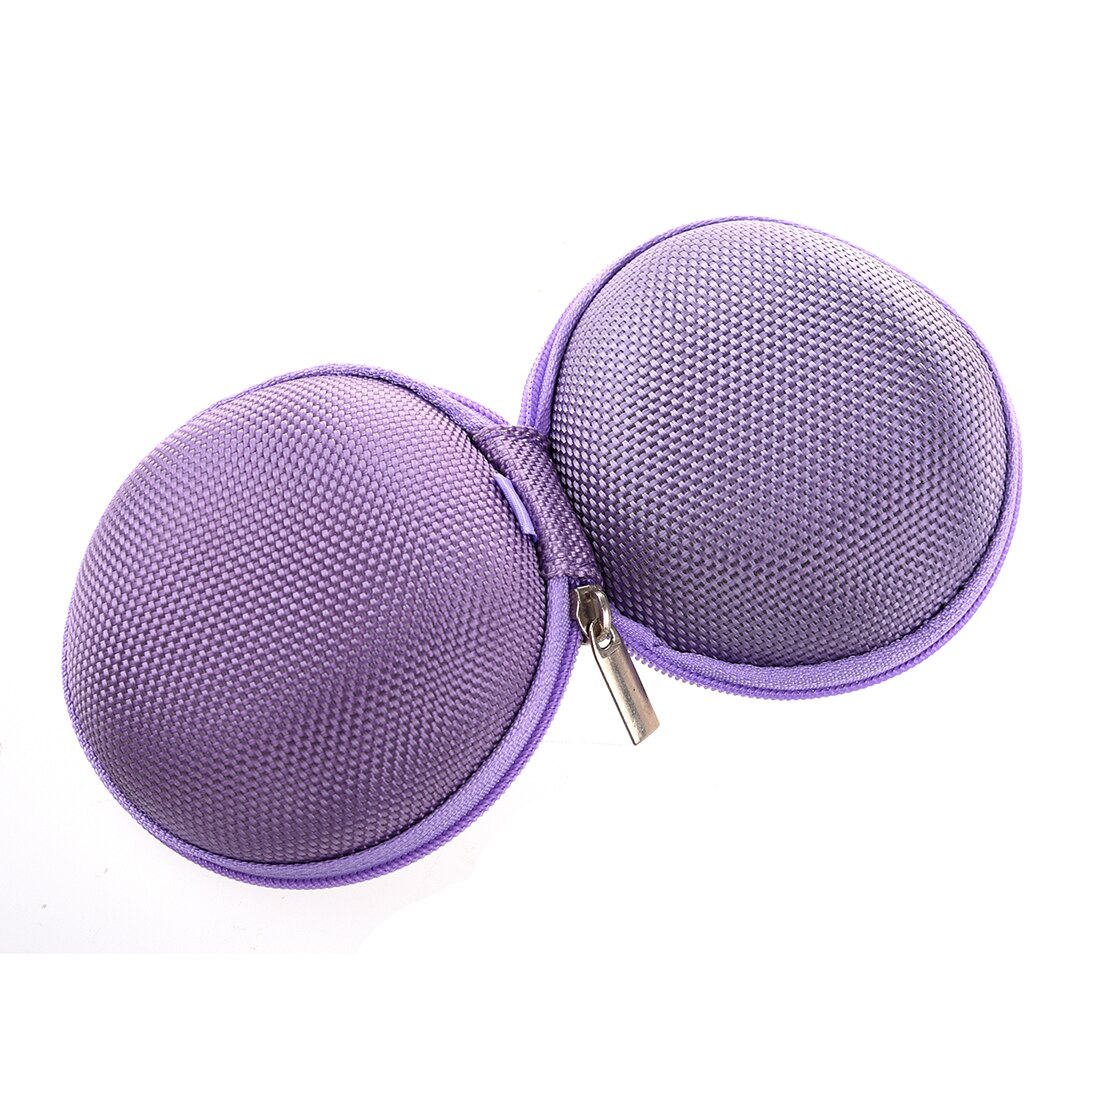 New High Quality Fashion Women Cute Mini Coin Bag Wallet Hand Pouch Purse Purple - ebowsos